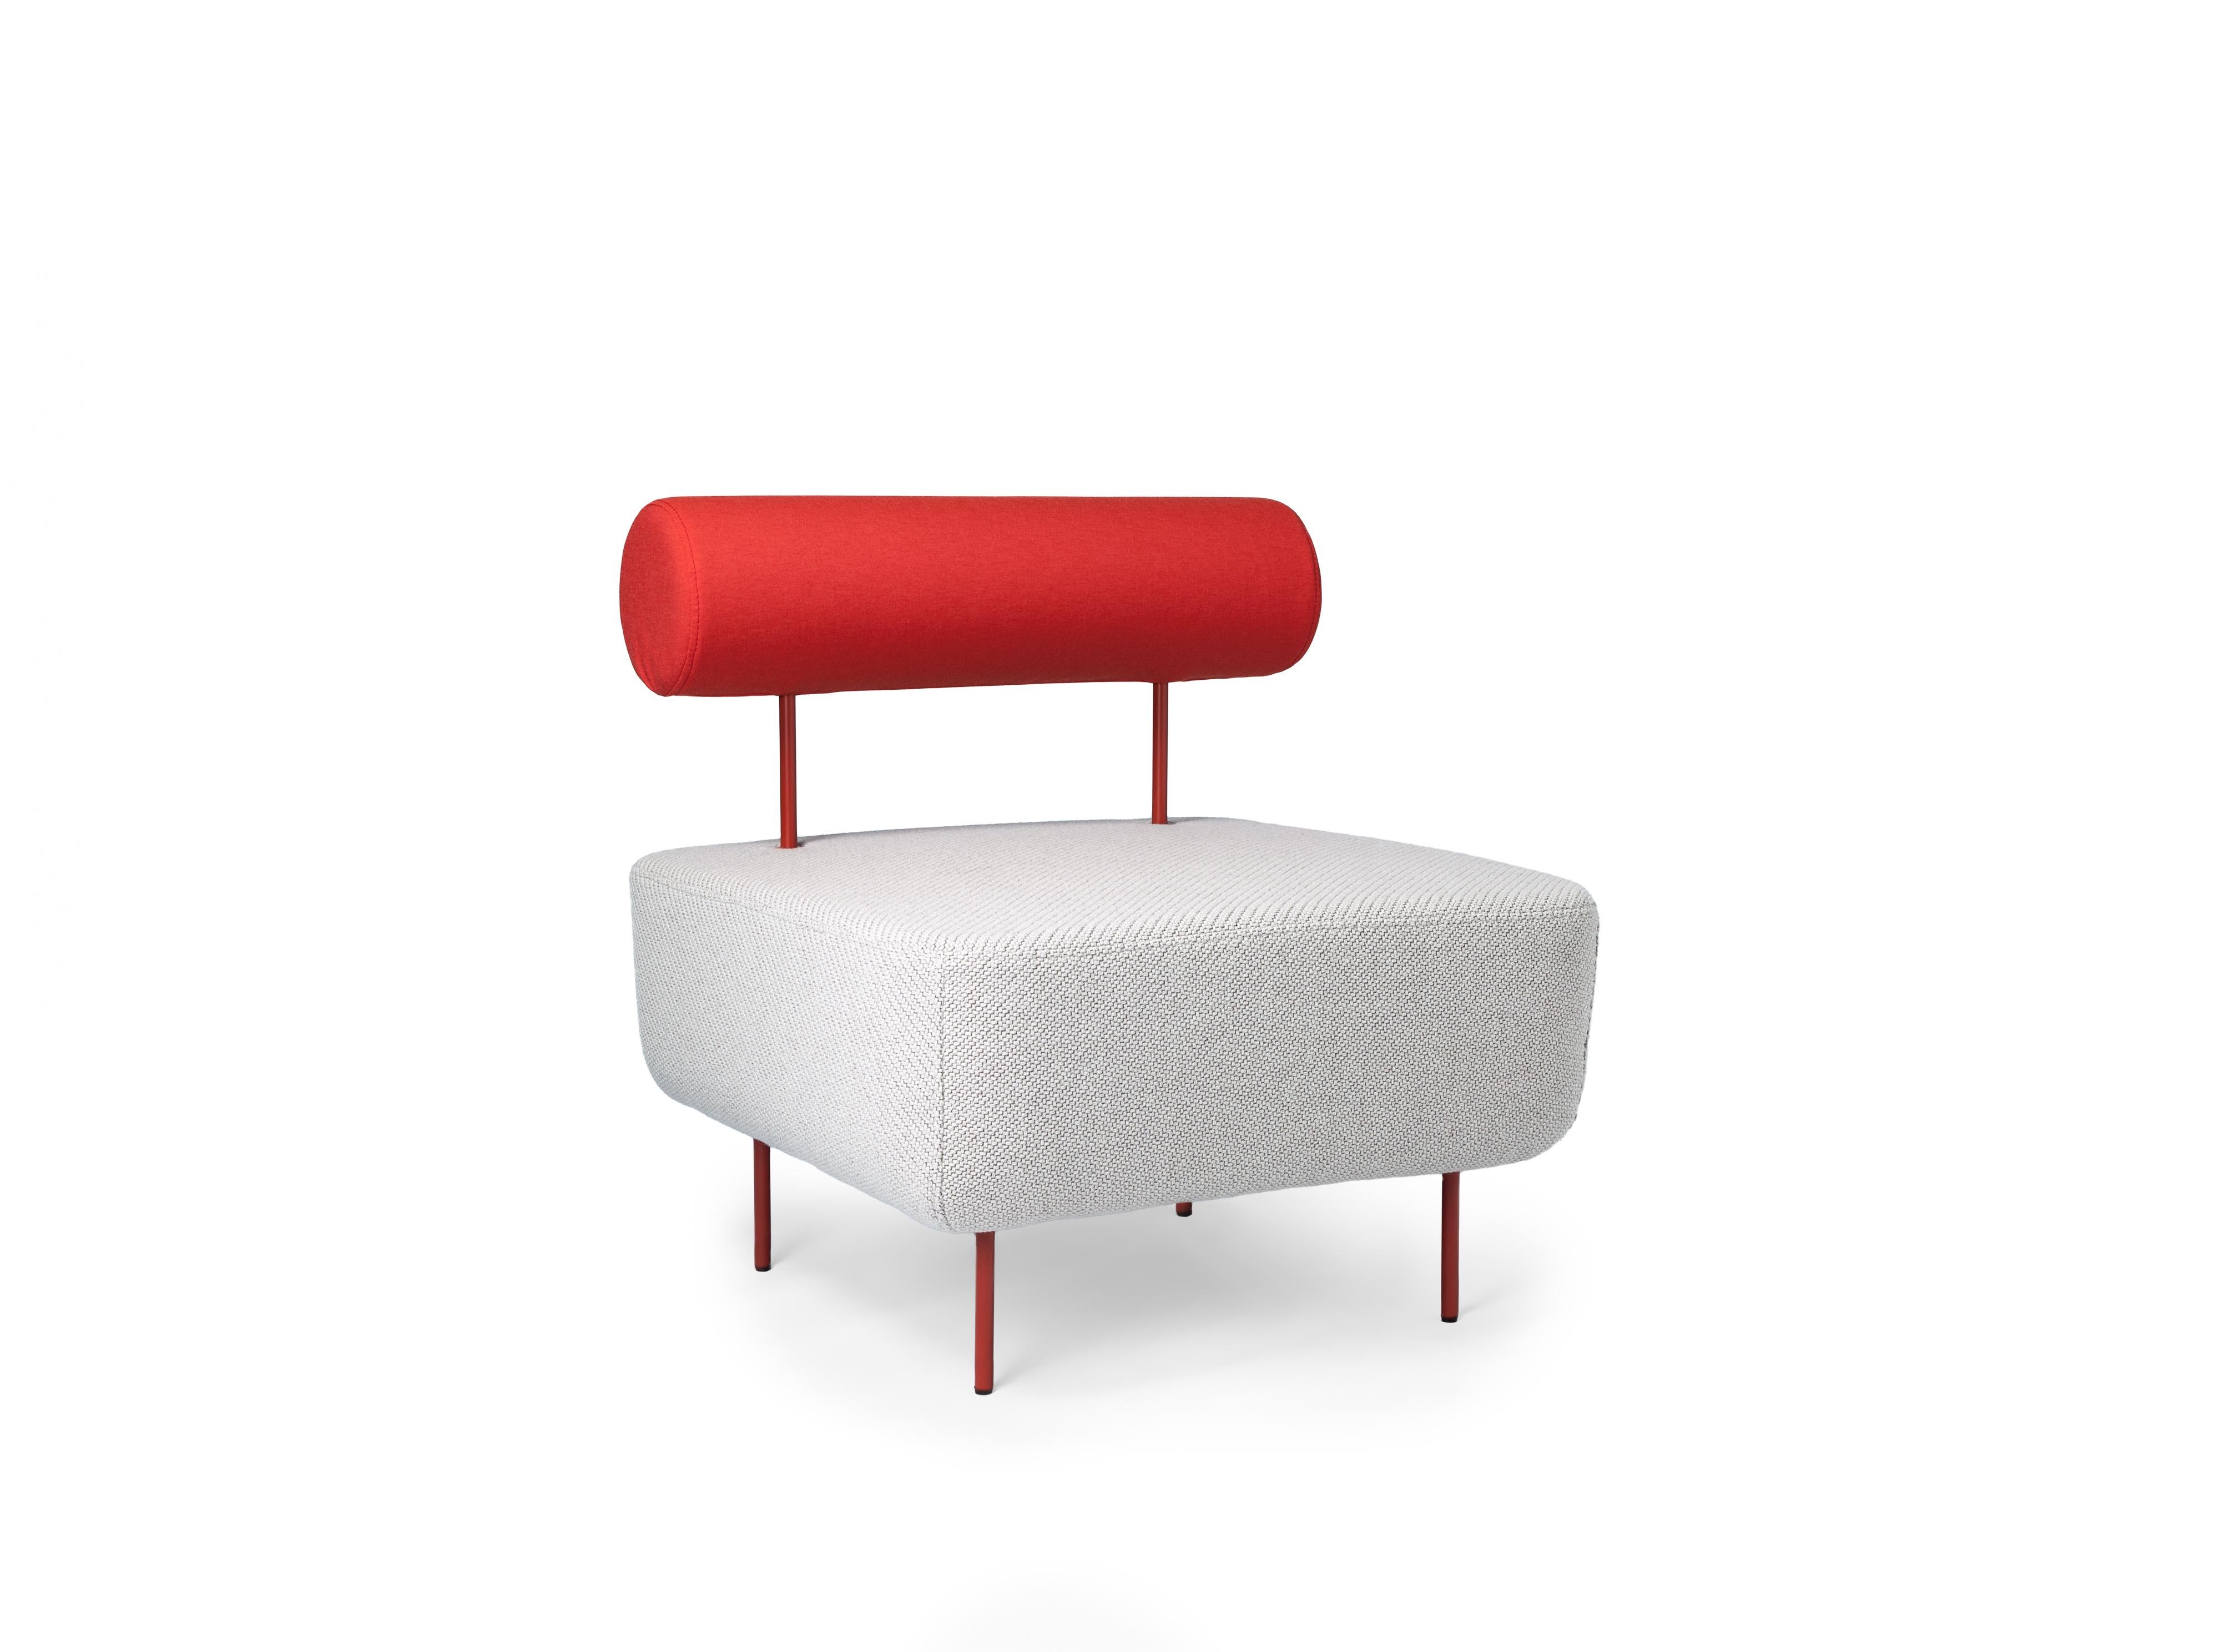 Petite Friture Medium Whiting Armchair en blanc et rouge par Morten & Jonas, 2015

Hoff, créée par le duo de designers Morten & Jonas, est une collection de deux tabourets et de deux fauteuils modulaires. Ils peuvent être combinés pour former un